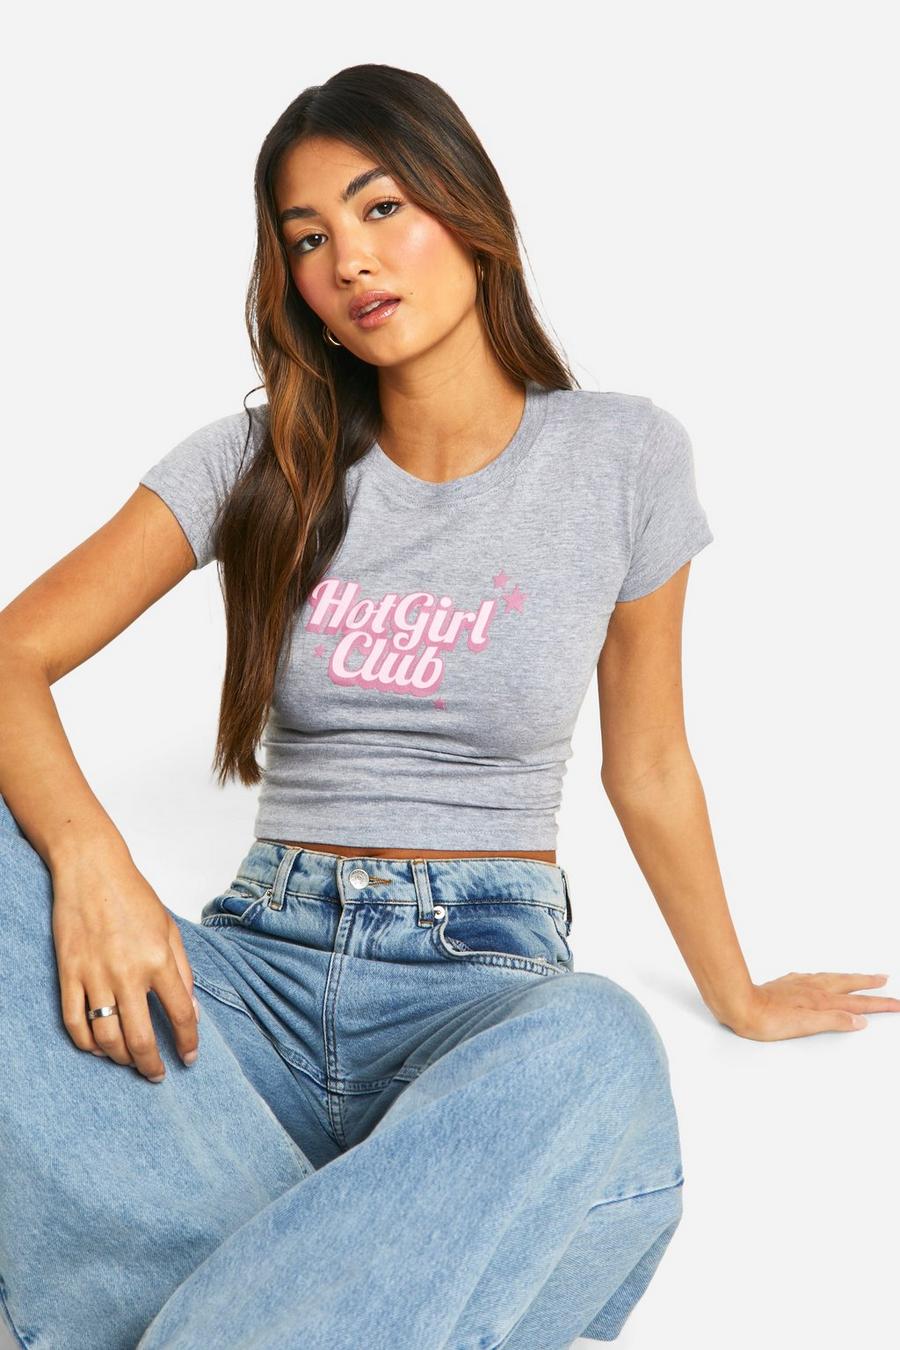 Camiseta con estampado Hot Girl Club Baby, Grey marl